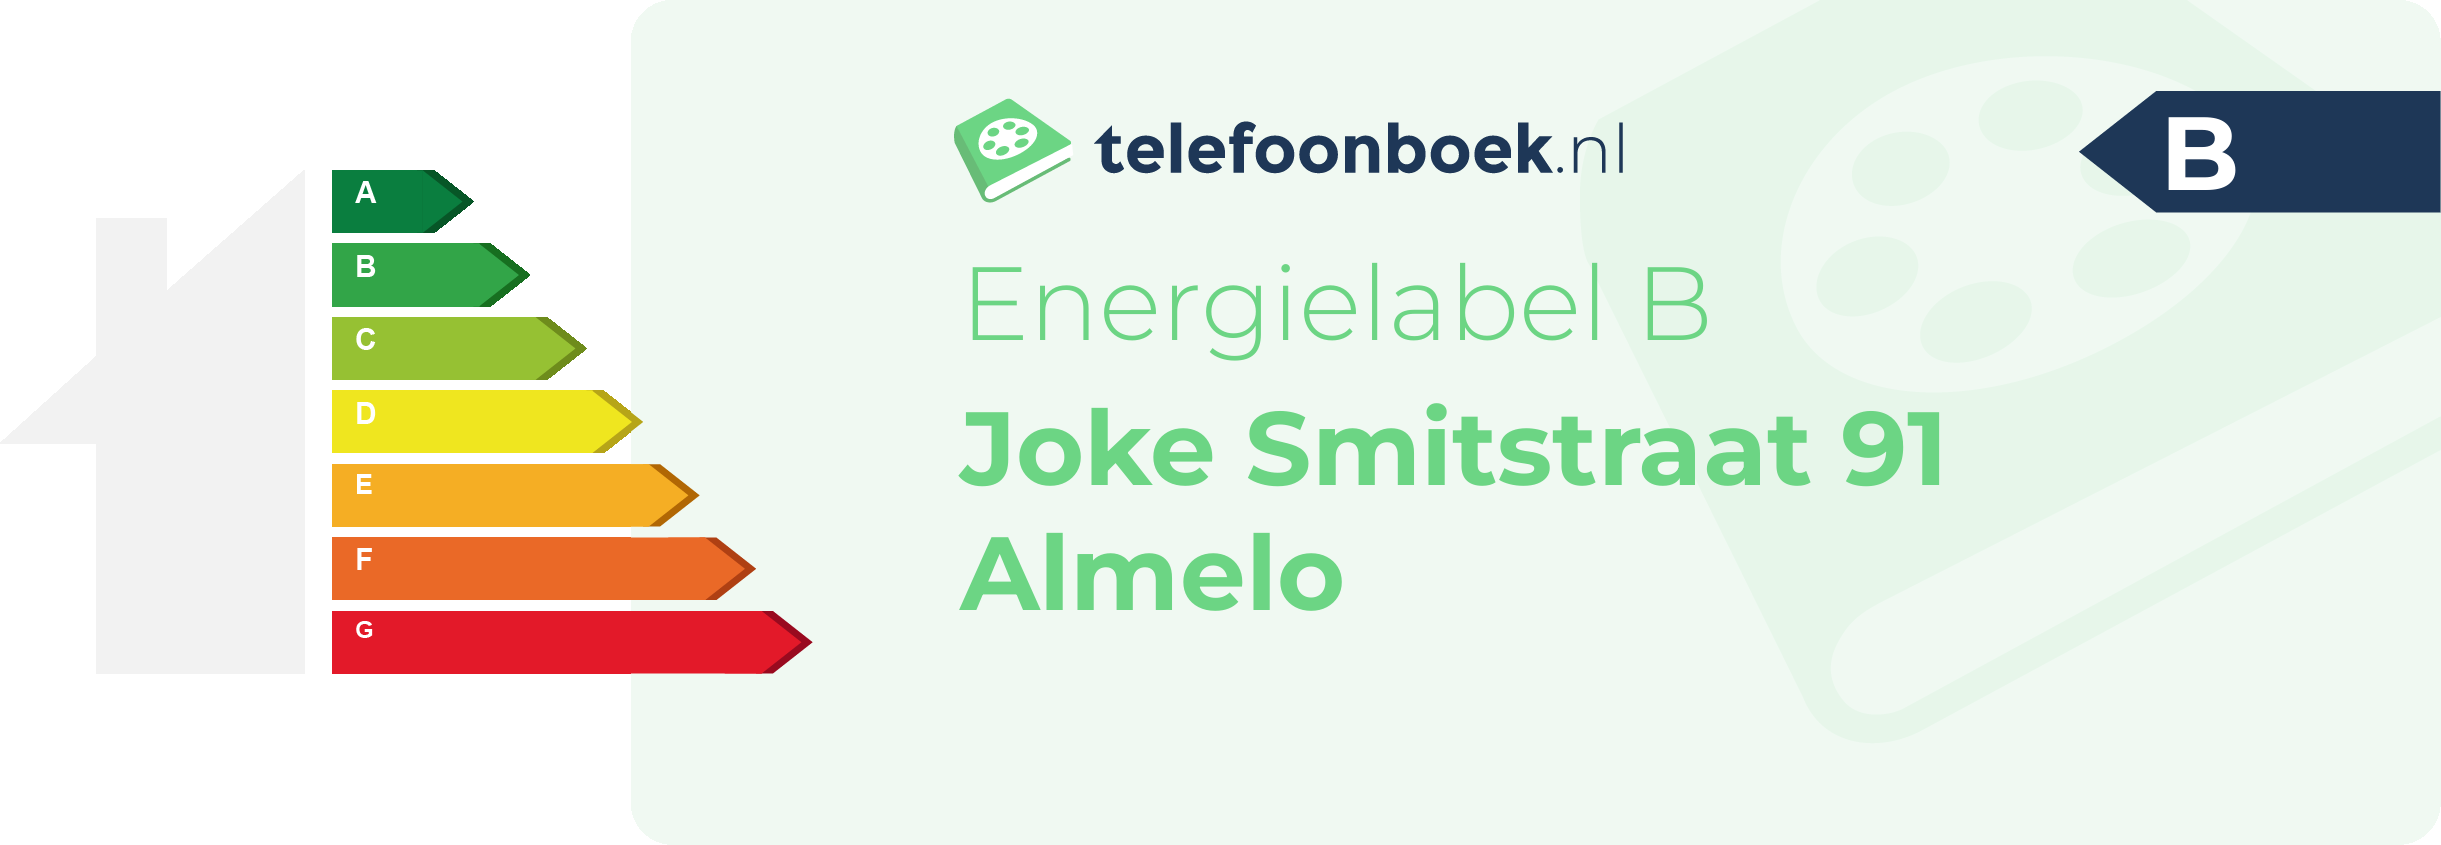 Energielabel Joke Smitstraat 91 Almelo